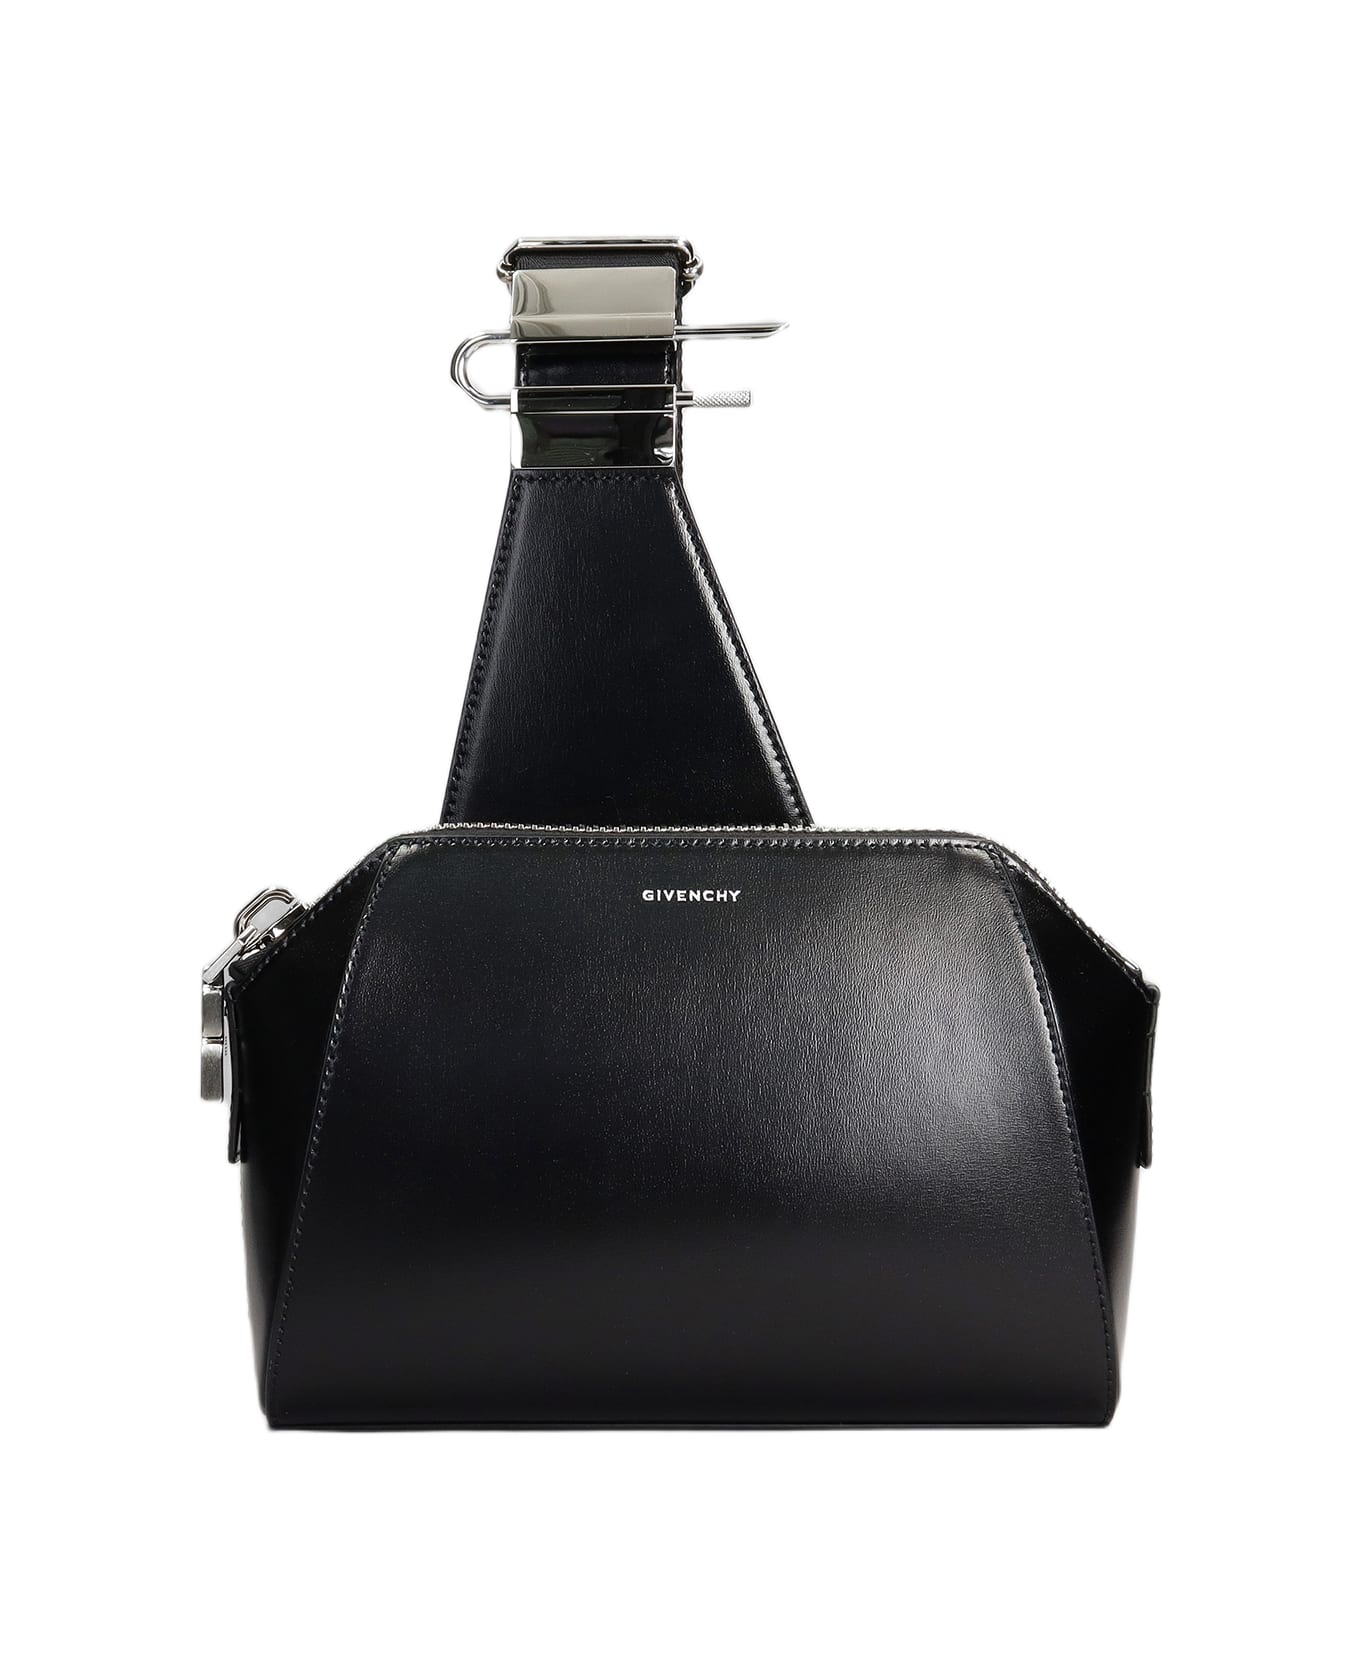 Givenchy Ant U Shoulder Bag In Black Leather - black ショルダーバッグ